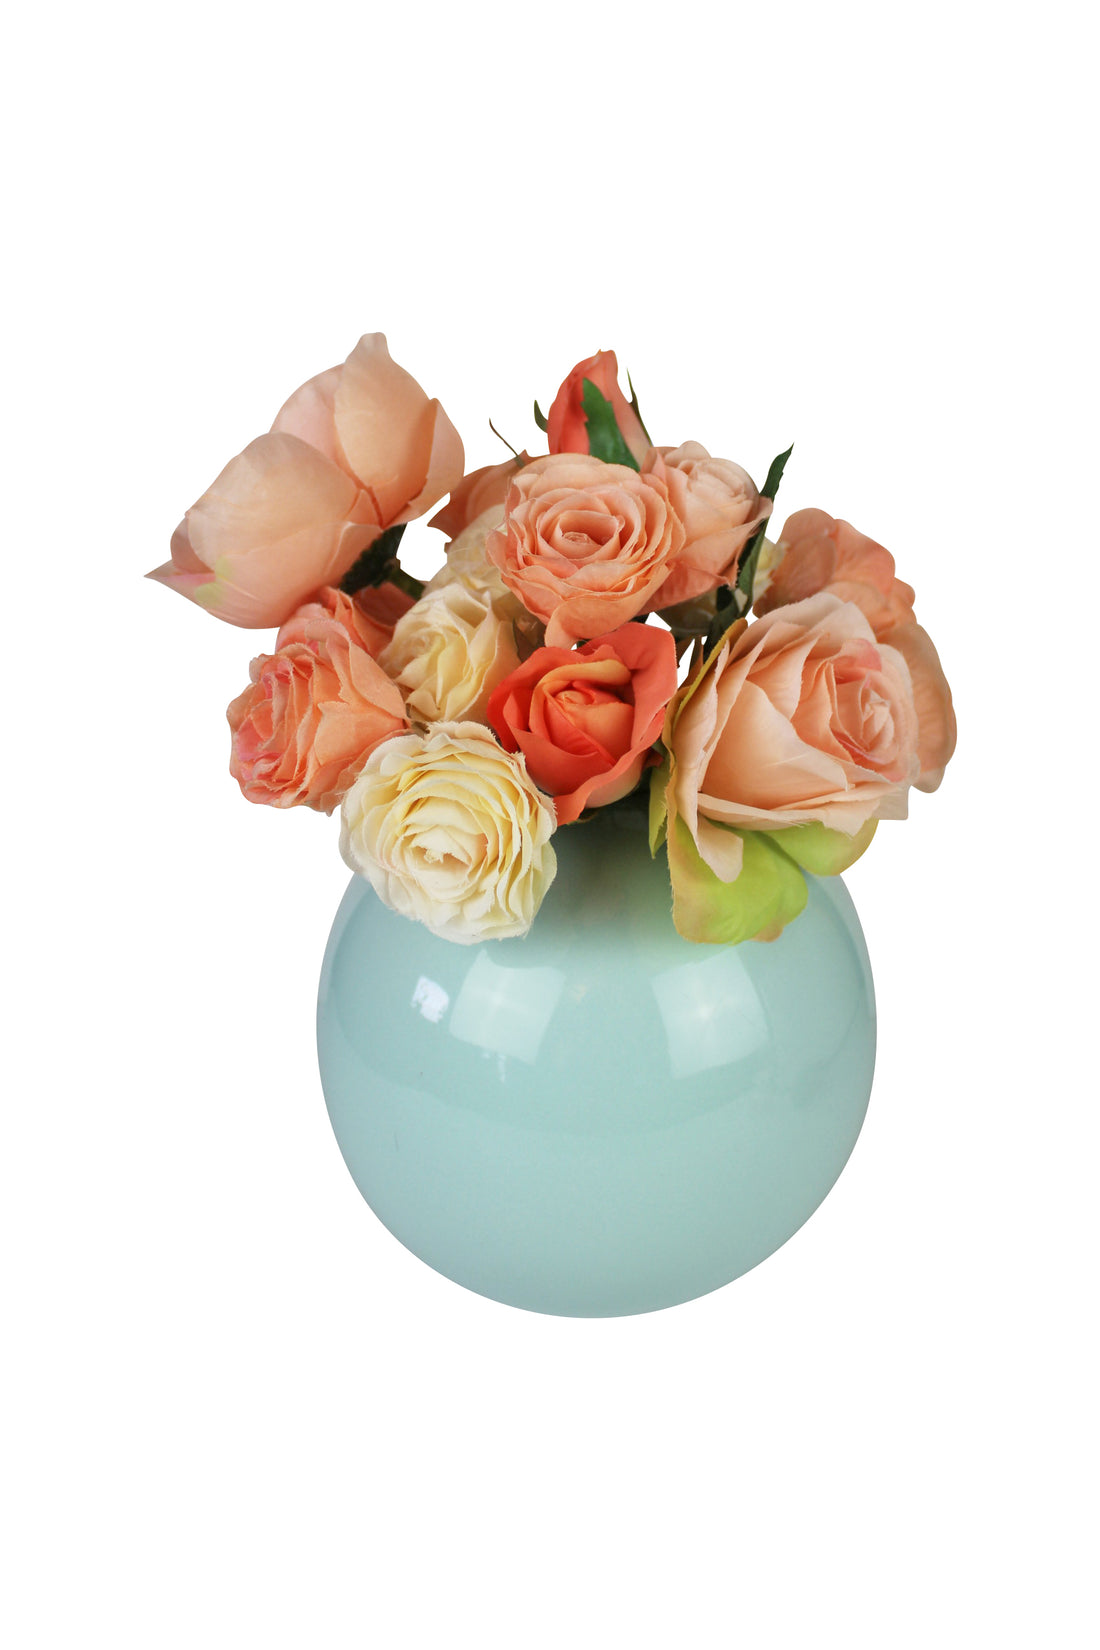 Roses in Round Teal Vase